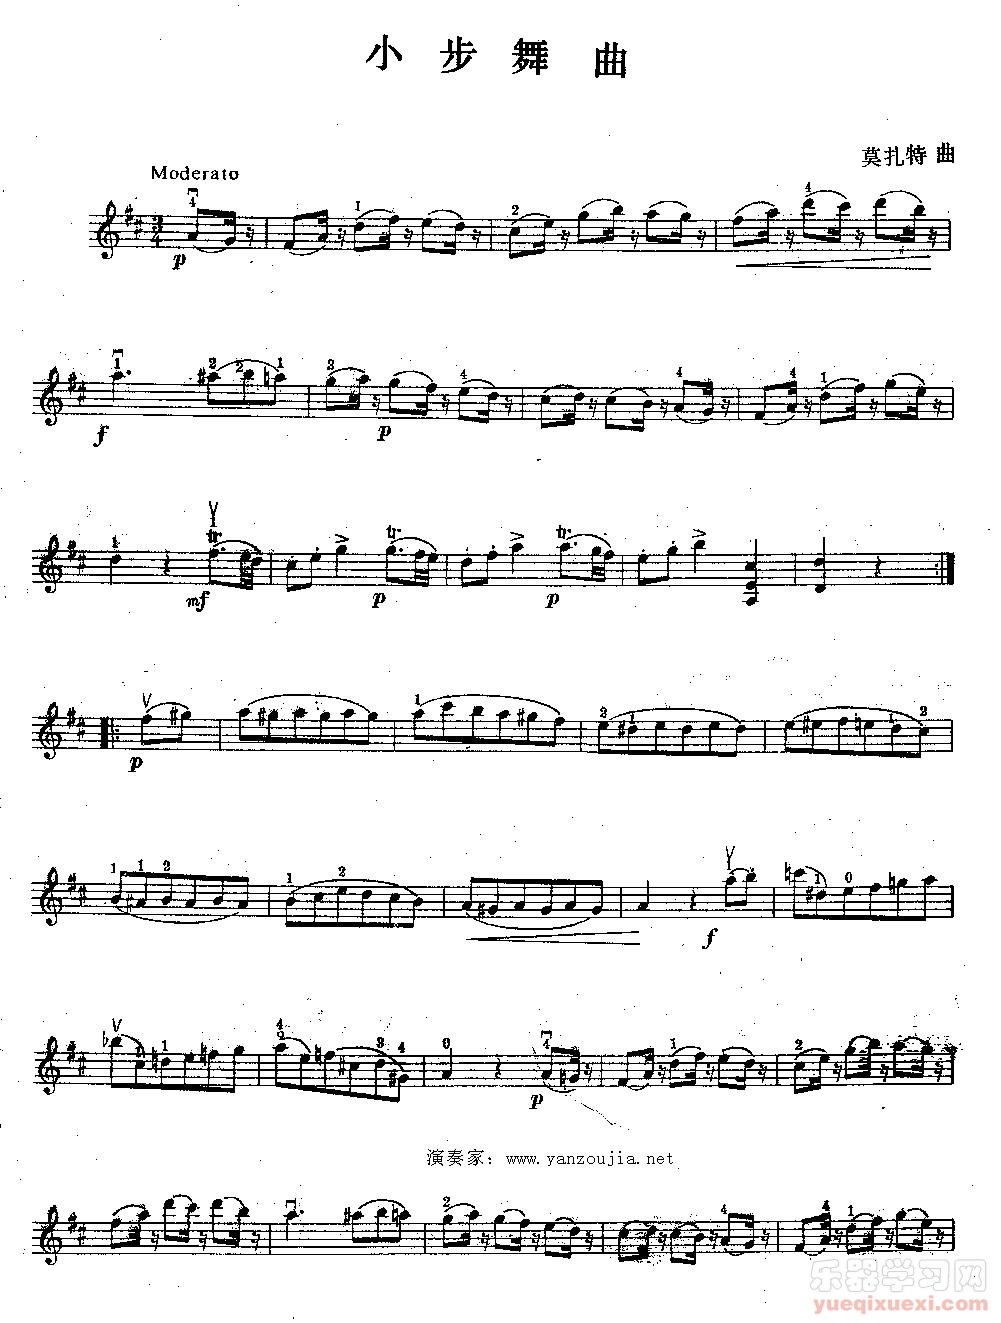 领略莫扎特小提琴小步舞曲的风韵（配乐谱+视频）